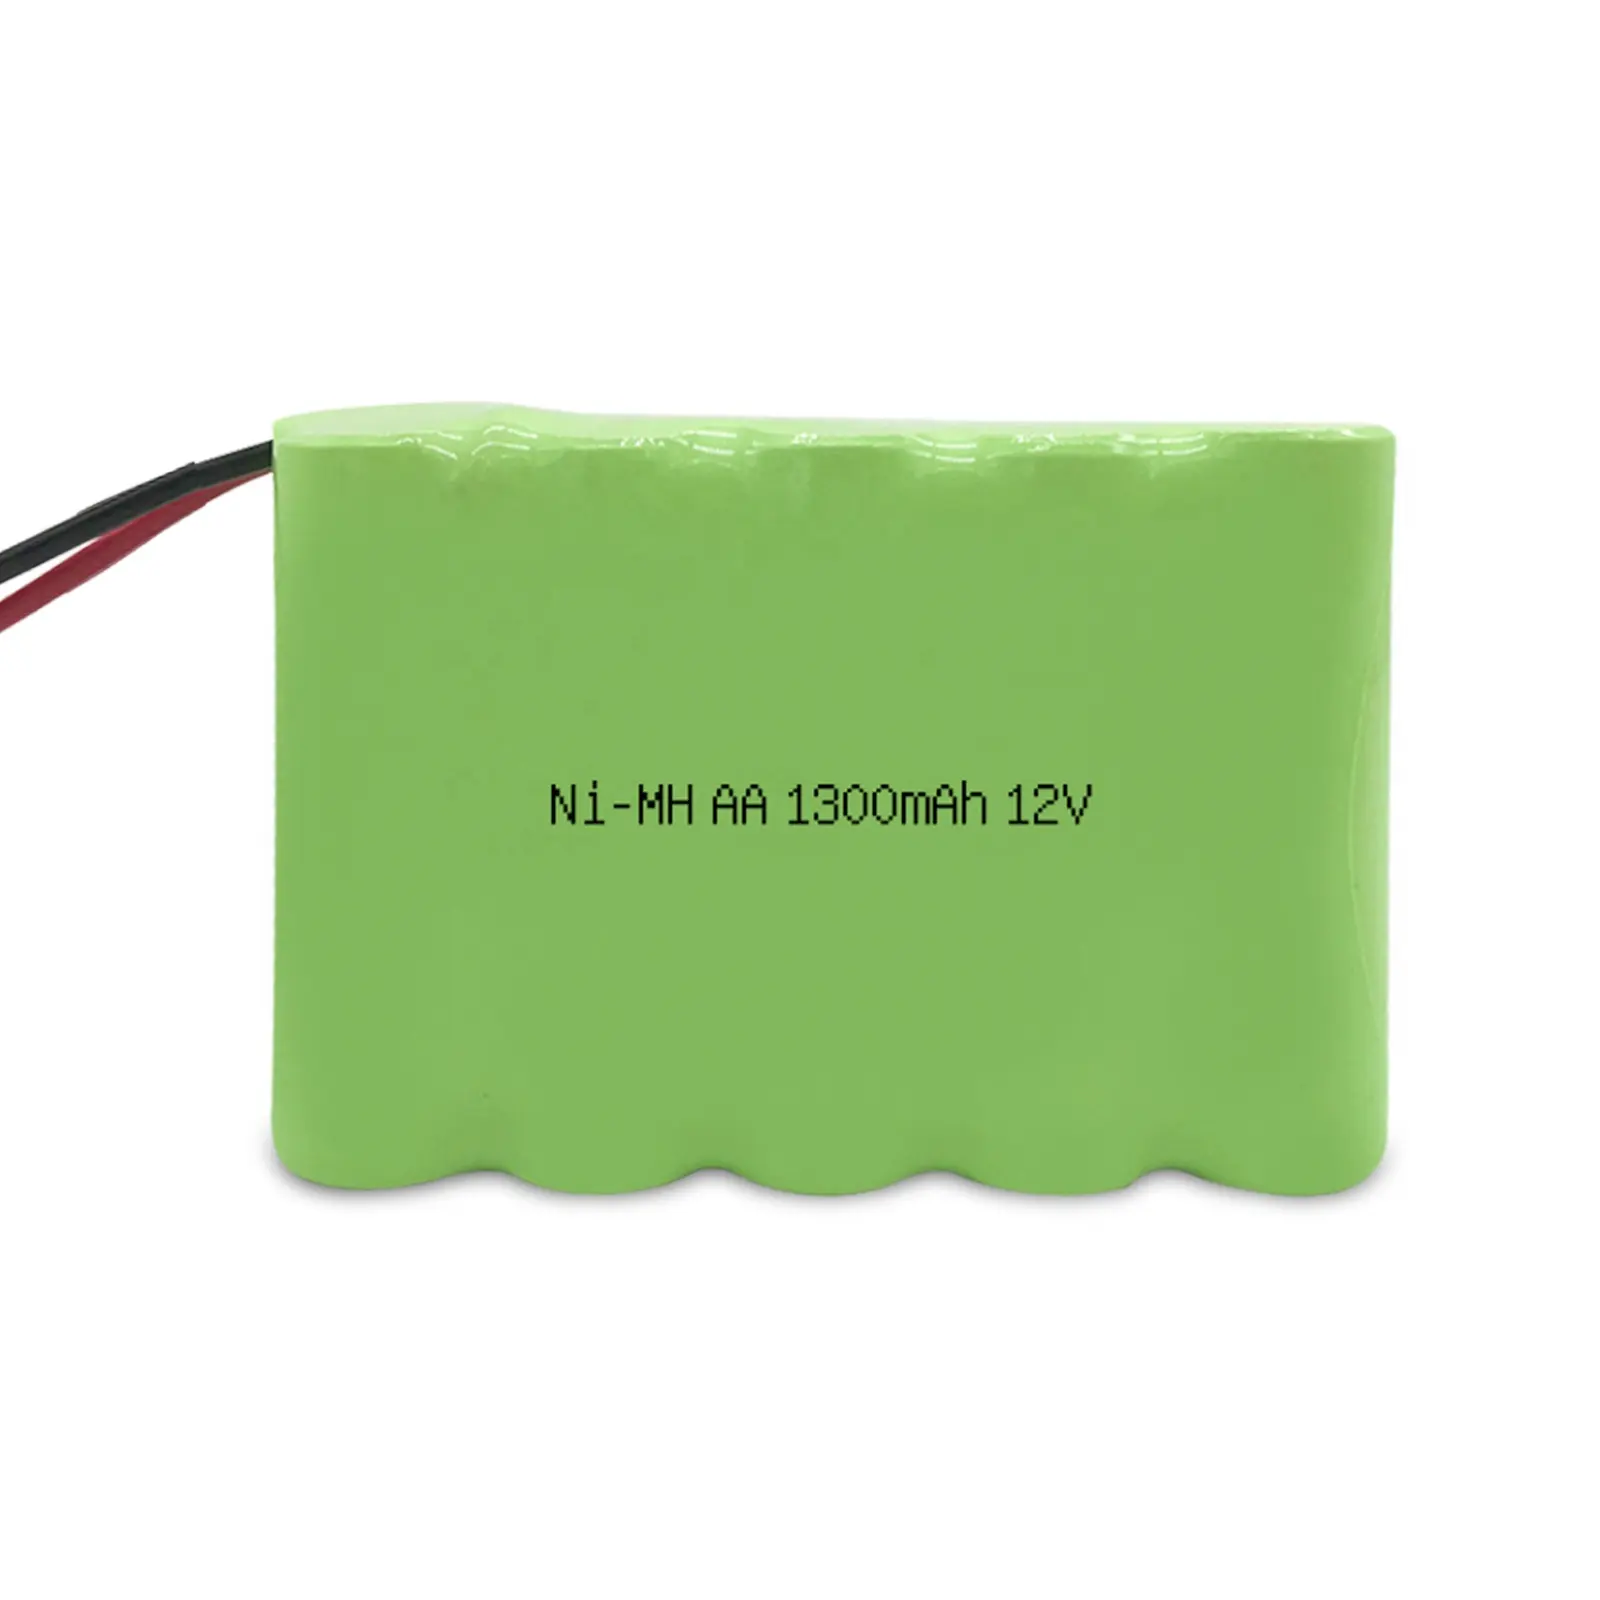 12V Ni-MH AA 1300mAh bateria recarregável com certificado BIS KC para brinquedos bateria